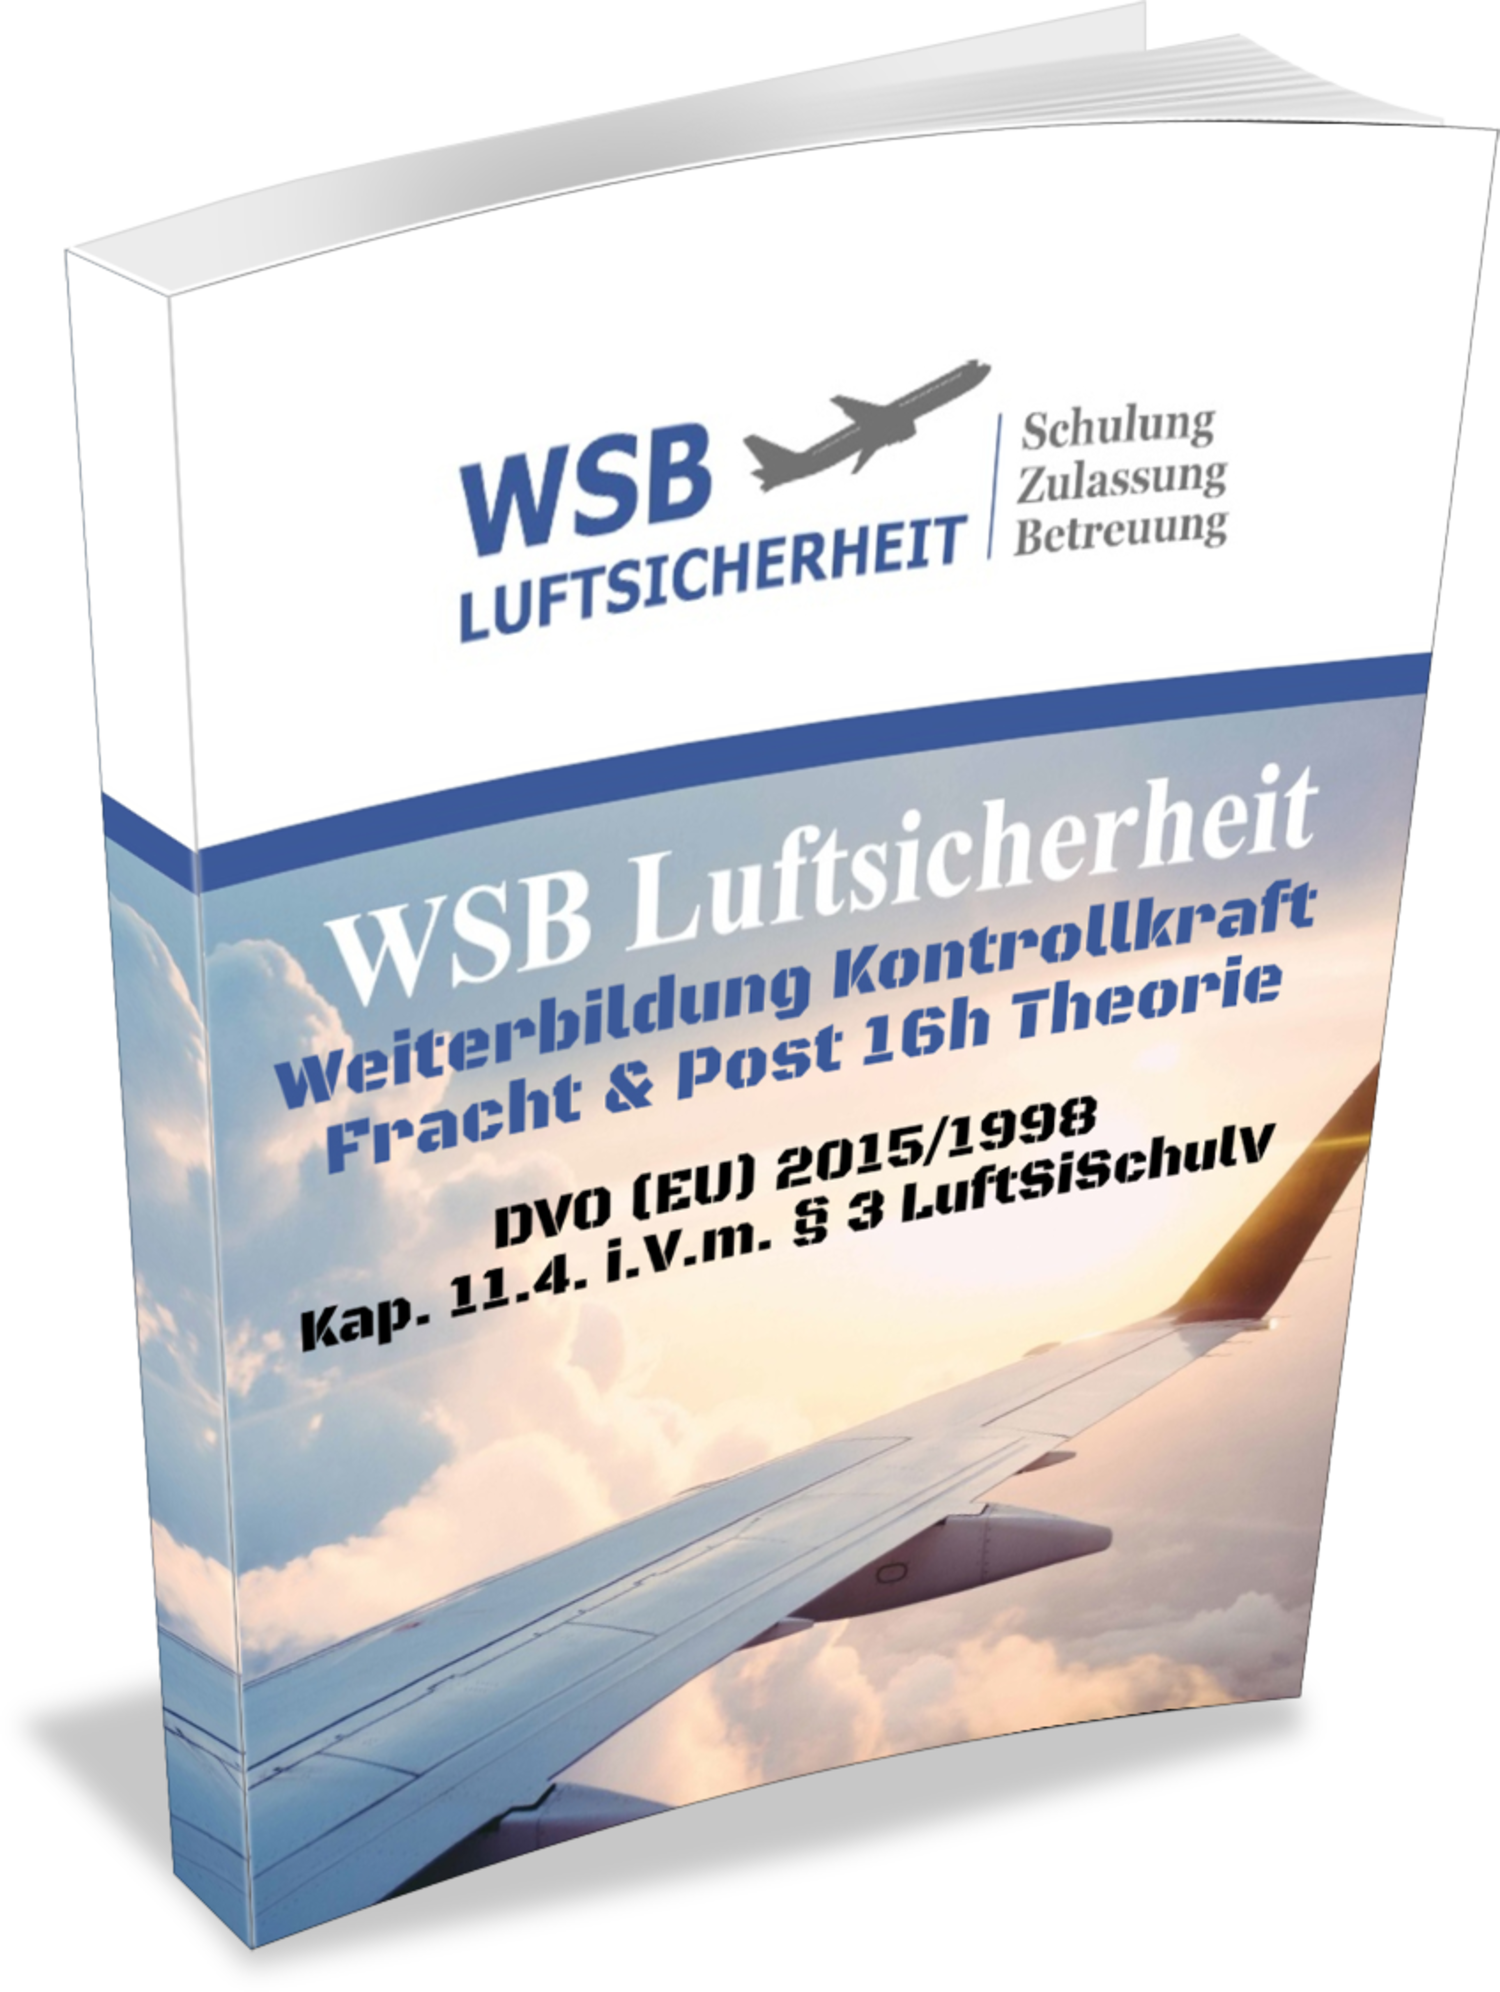 Weiterbildung-Luftsicherheitskontrollkraft-Fracht-Theorie-WSB-Schulung-und-Beratung